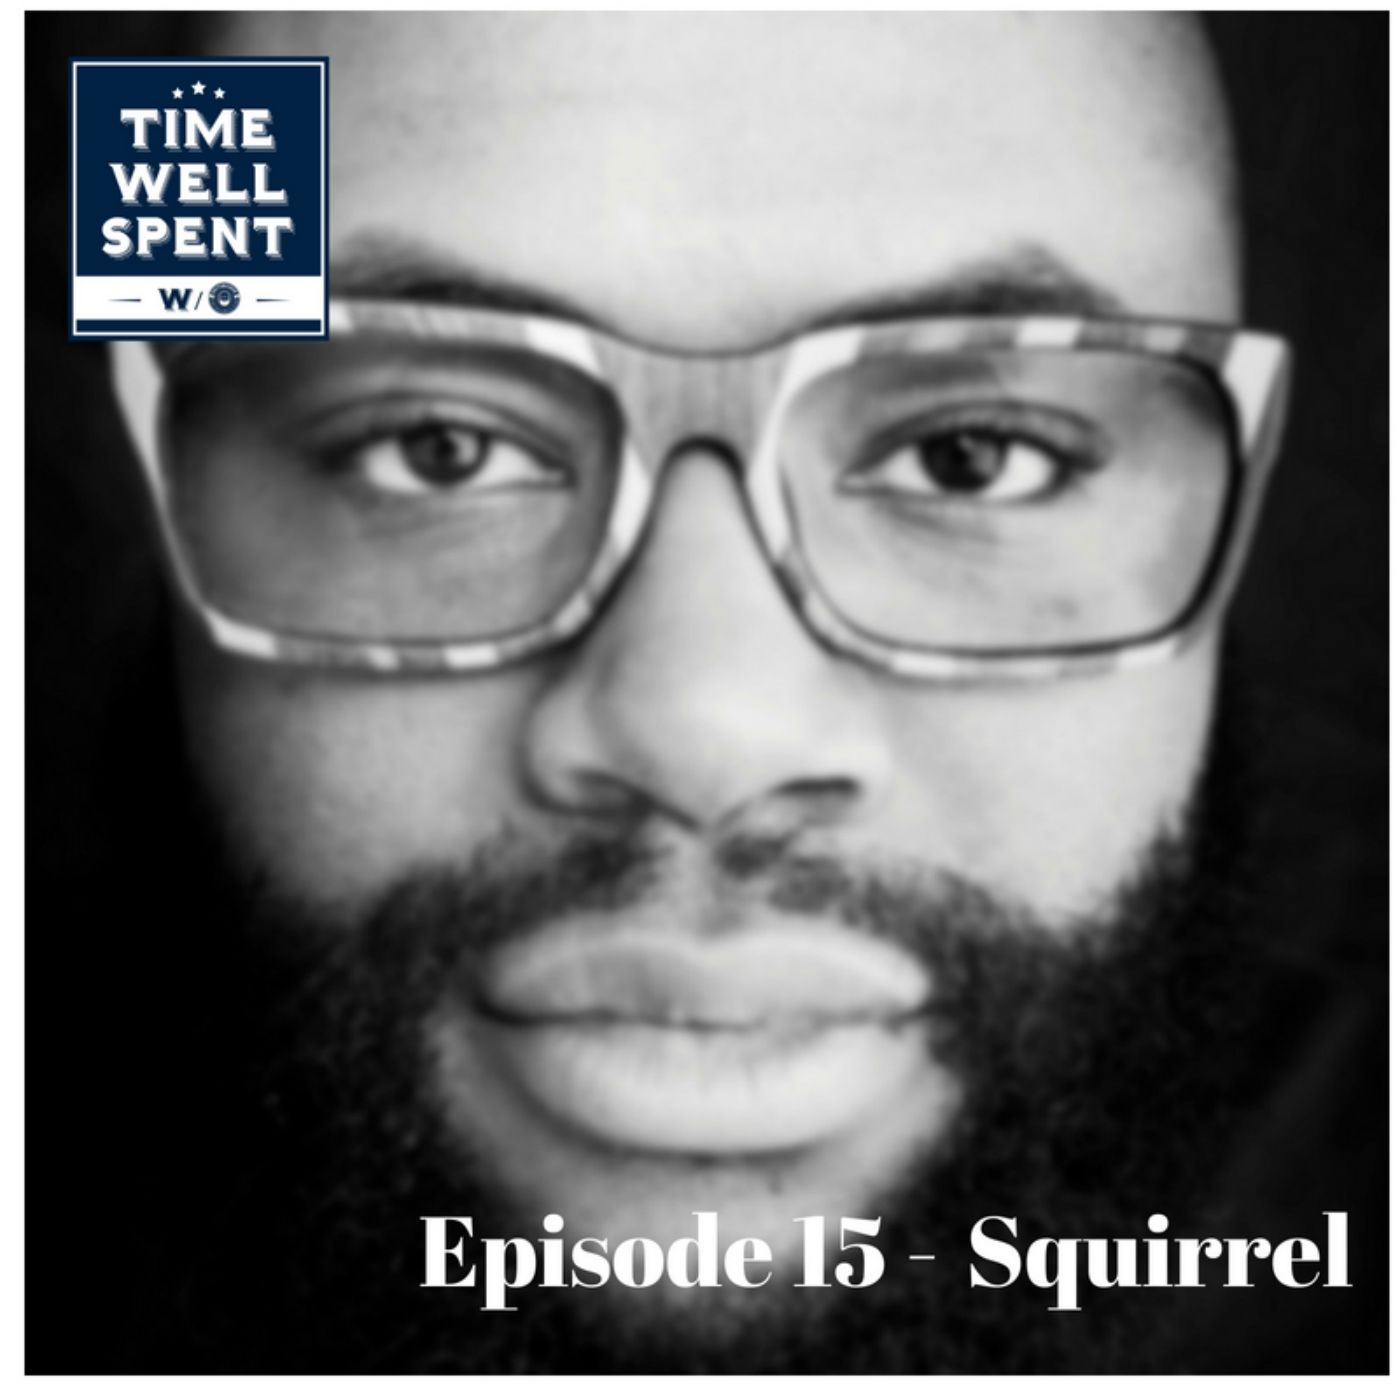 Episode 15 - Squirrel